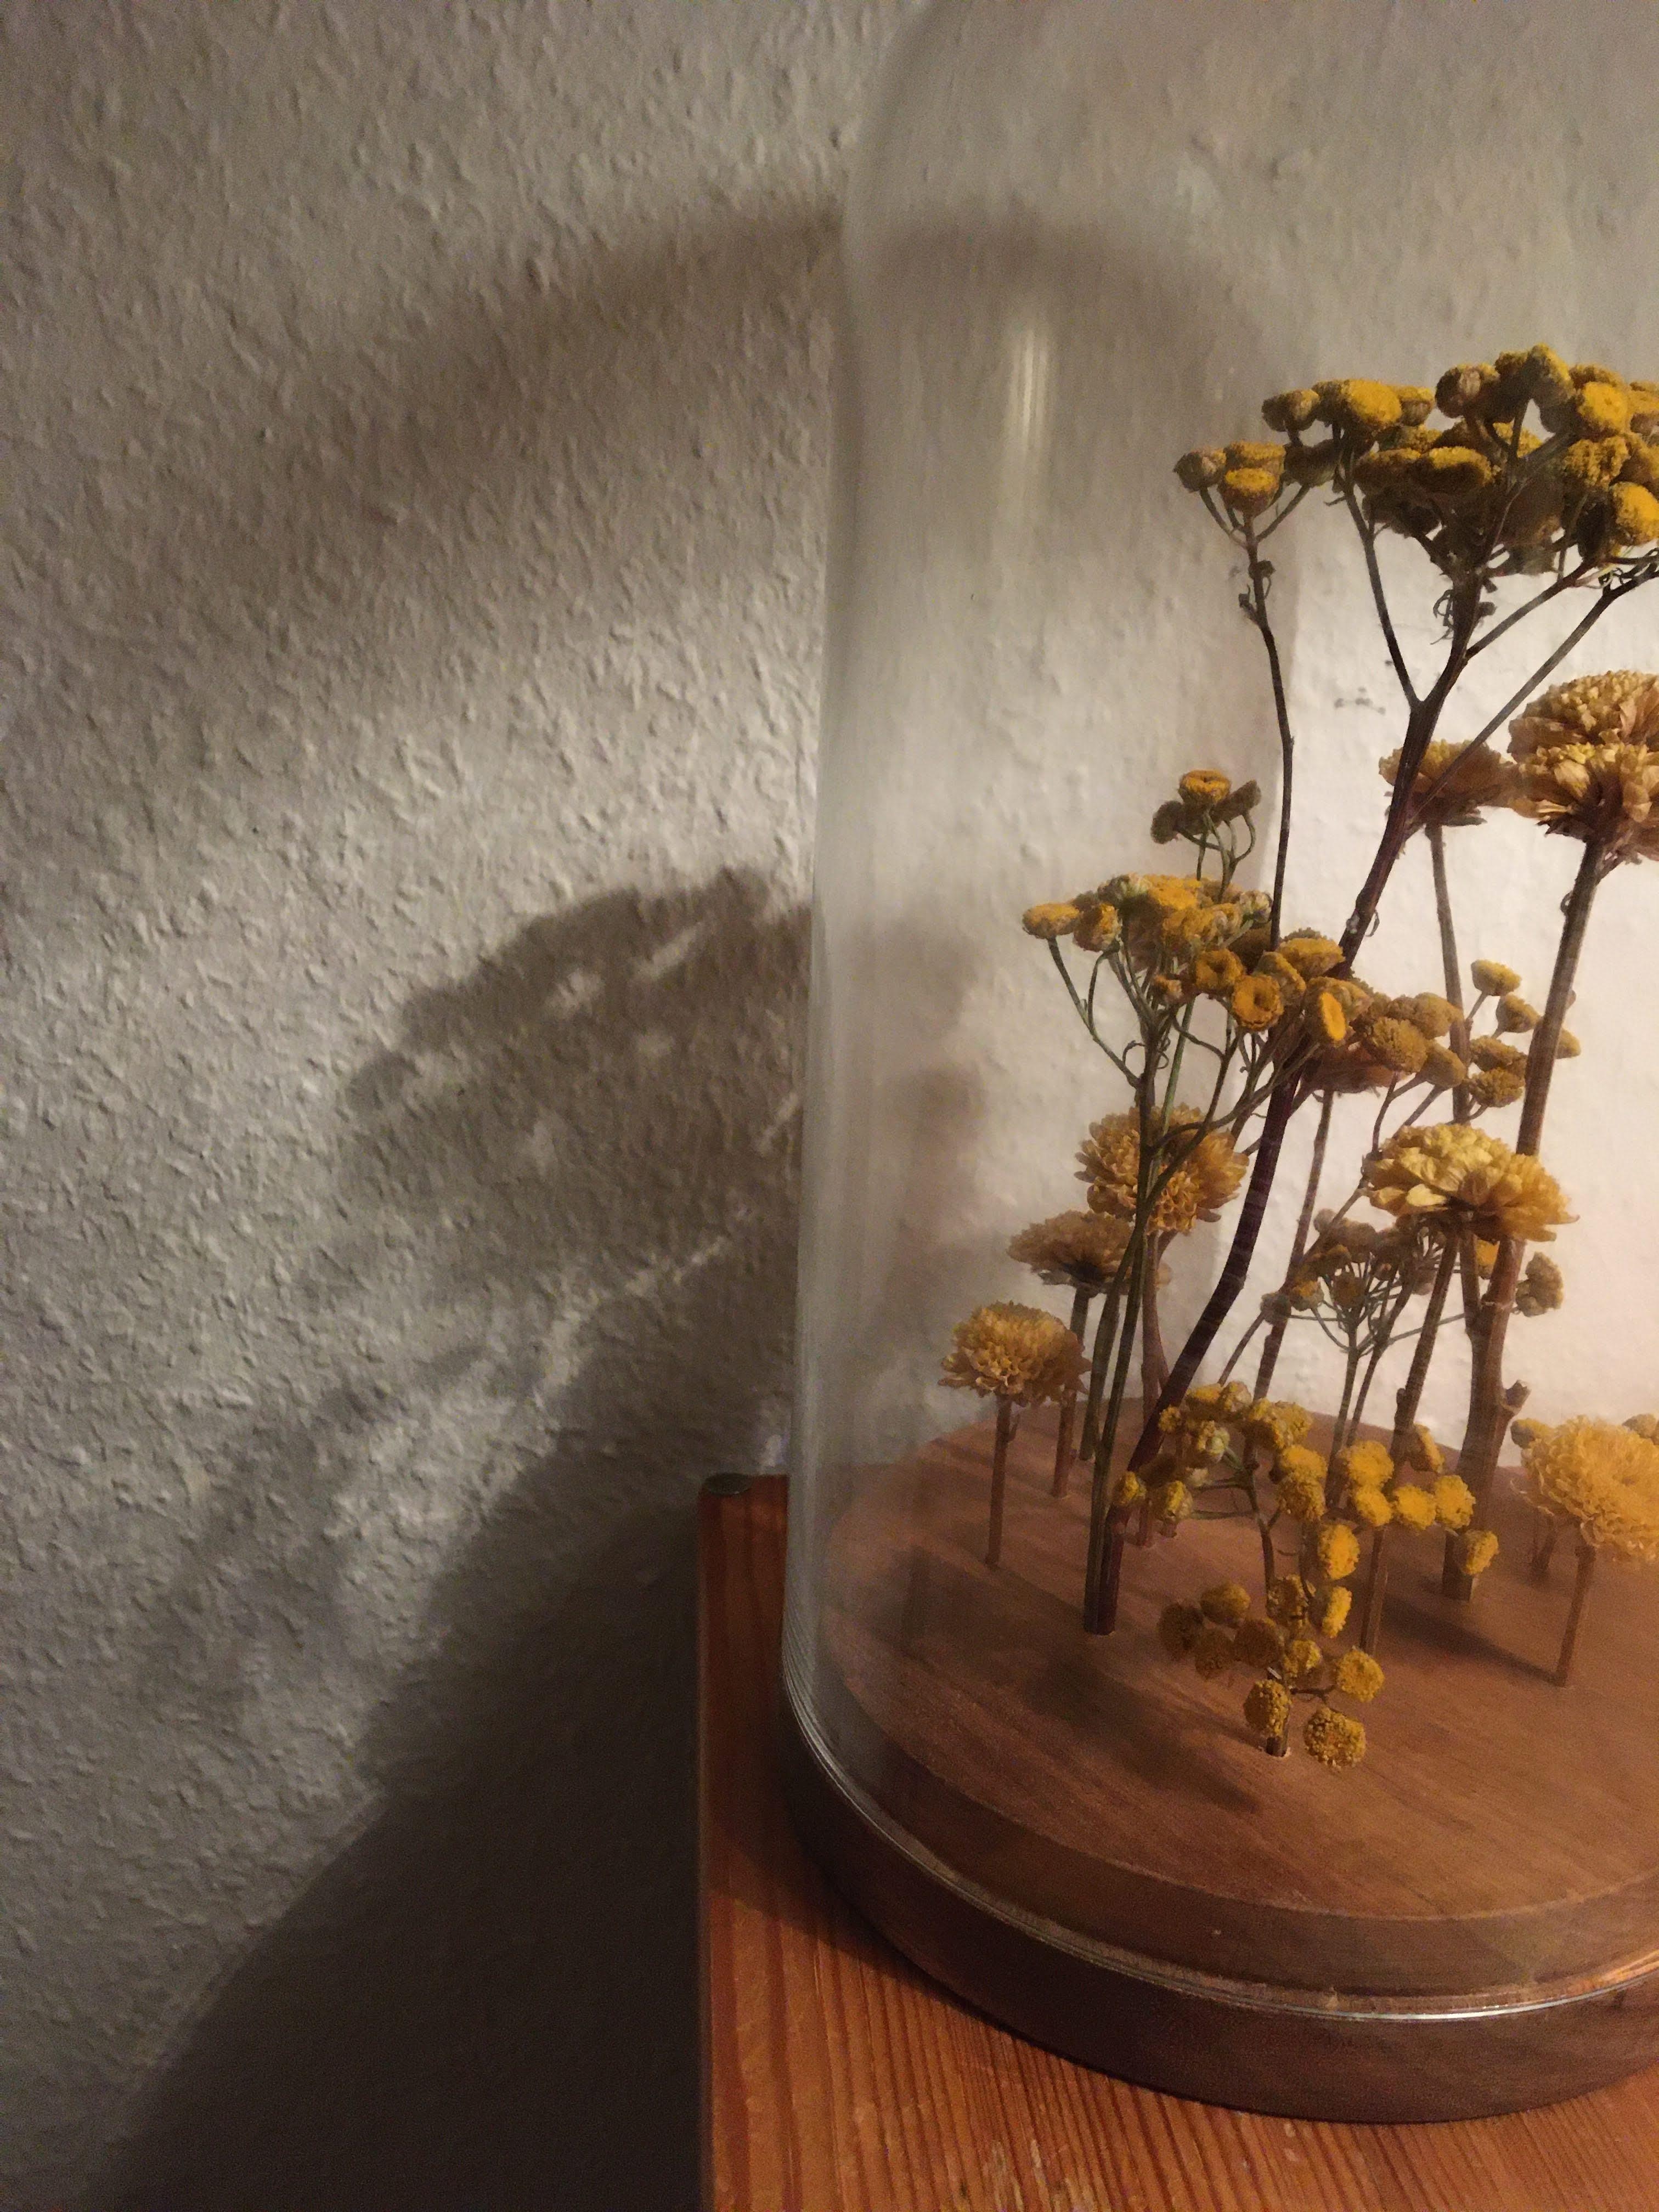 Blumenkunst zuhause.
#Kunst #Blumendekor #Trockenblumen #Glasglocken #Eigenwerk #Dekoration